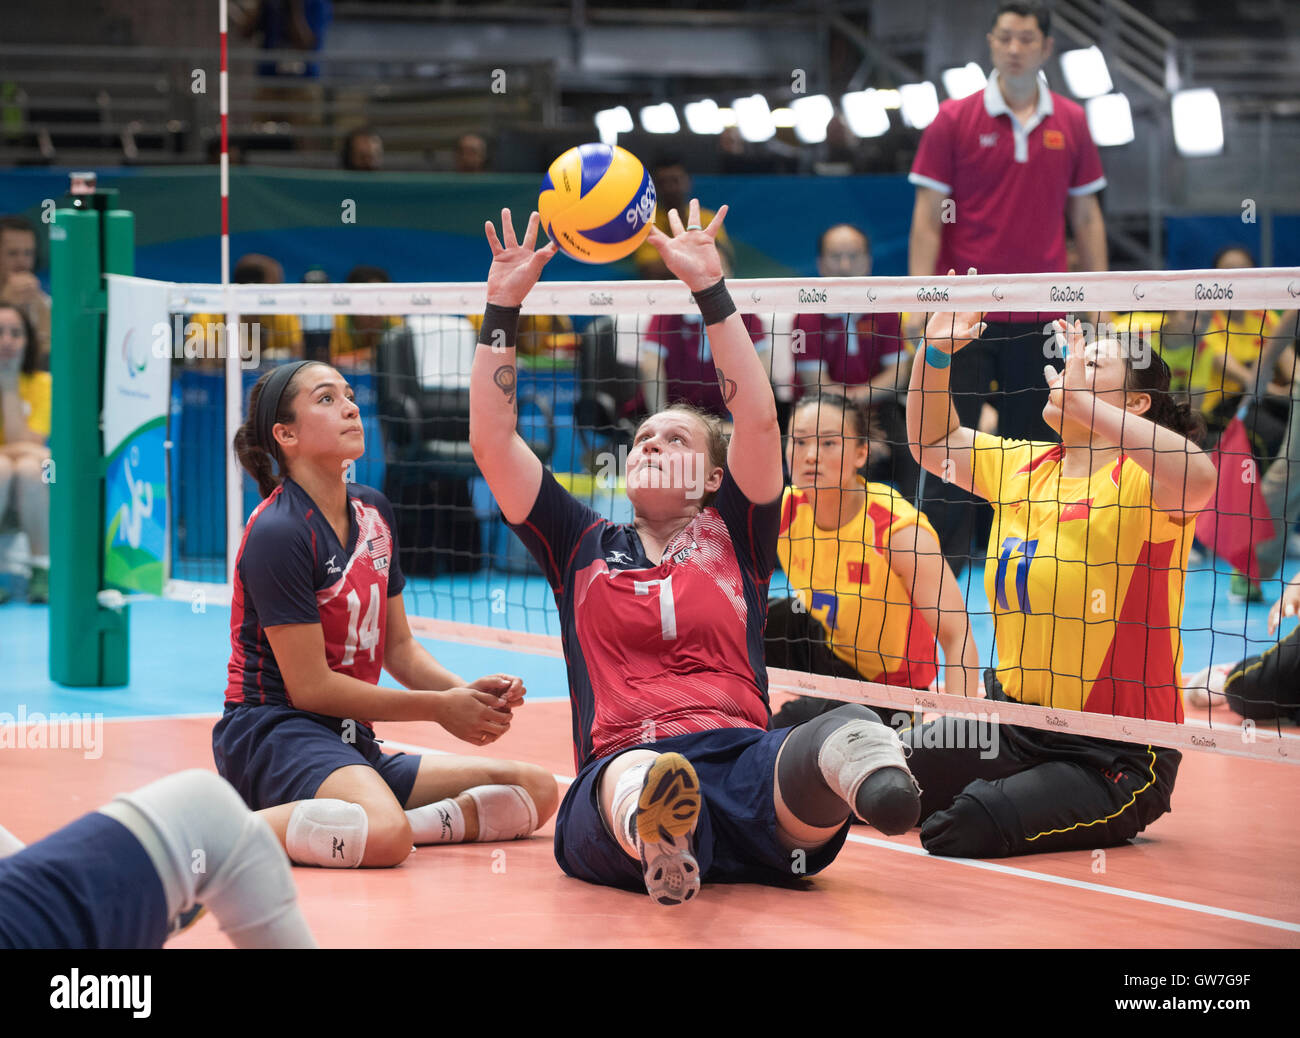 Monique Burklund de los EE.UU. establece la pelota durante una sesión de voleibol femenino del partido contra China en los Juegos Paralímpicos en Río. Foto de stock